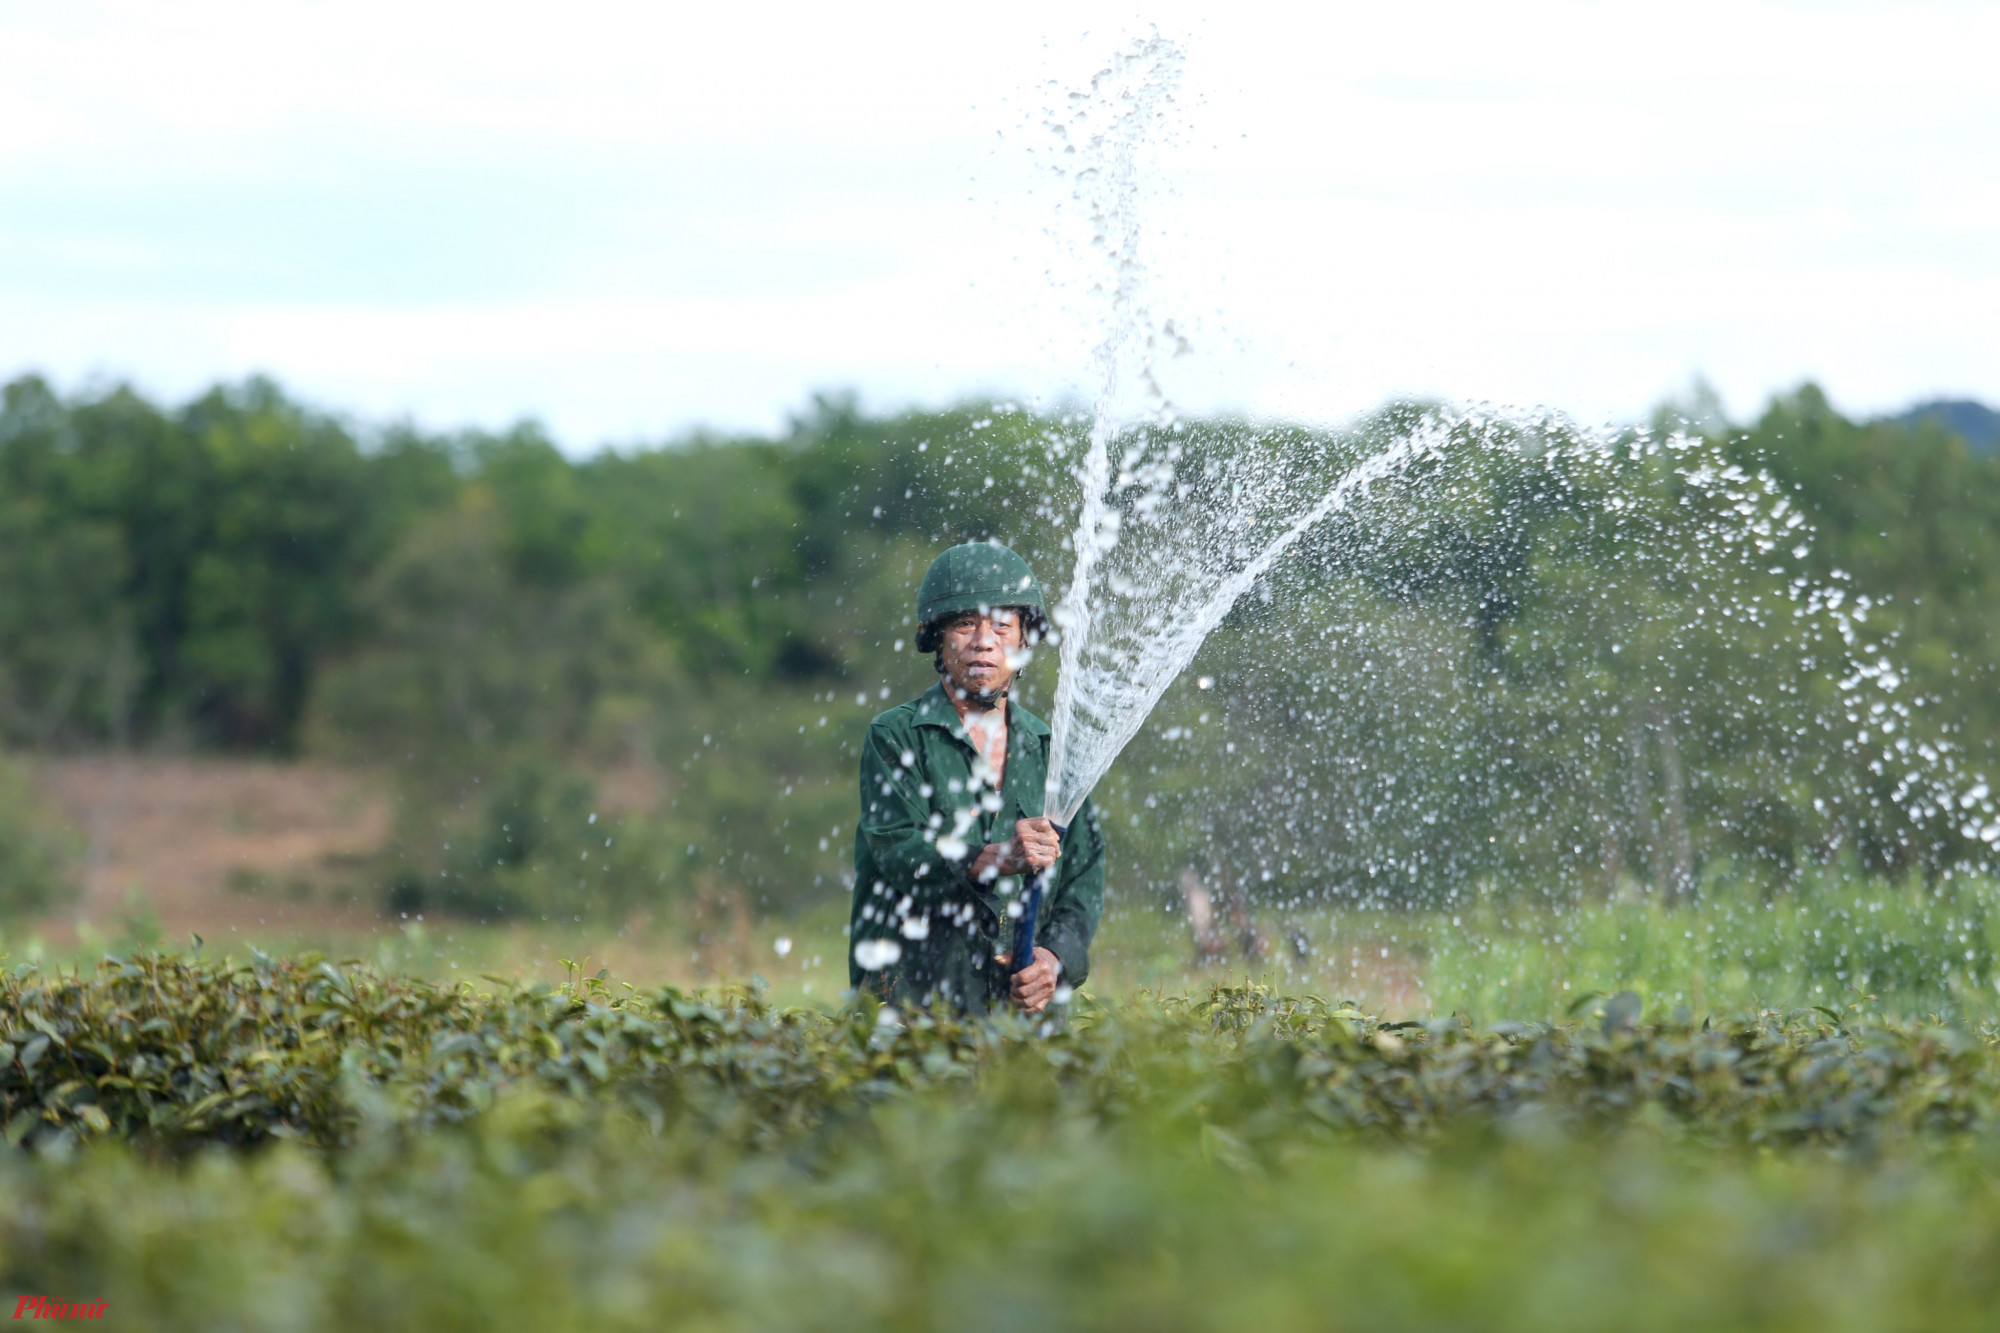 Ông Phan Kỳ - Phó chủ tịch UBND huyện Hương Khê - cho biết, nắng nóng kéo dài khiến các vùng trồng chè hoặc cây đặc sản cam, bưởi chịu ảnh hưởng lớn, sản lượng giảm sút. Hiện, một số hồ đập trên địa bàn đã cạn, việc cung ứng nguồn nước tưới đảm bảo chống hạn cũng gặp khó khăn.